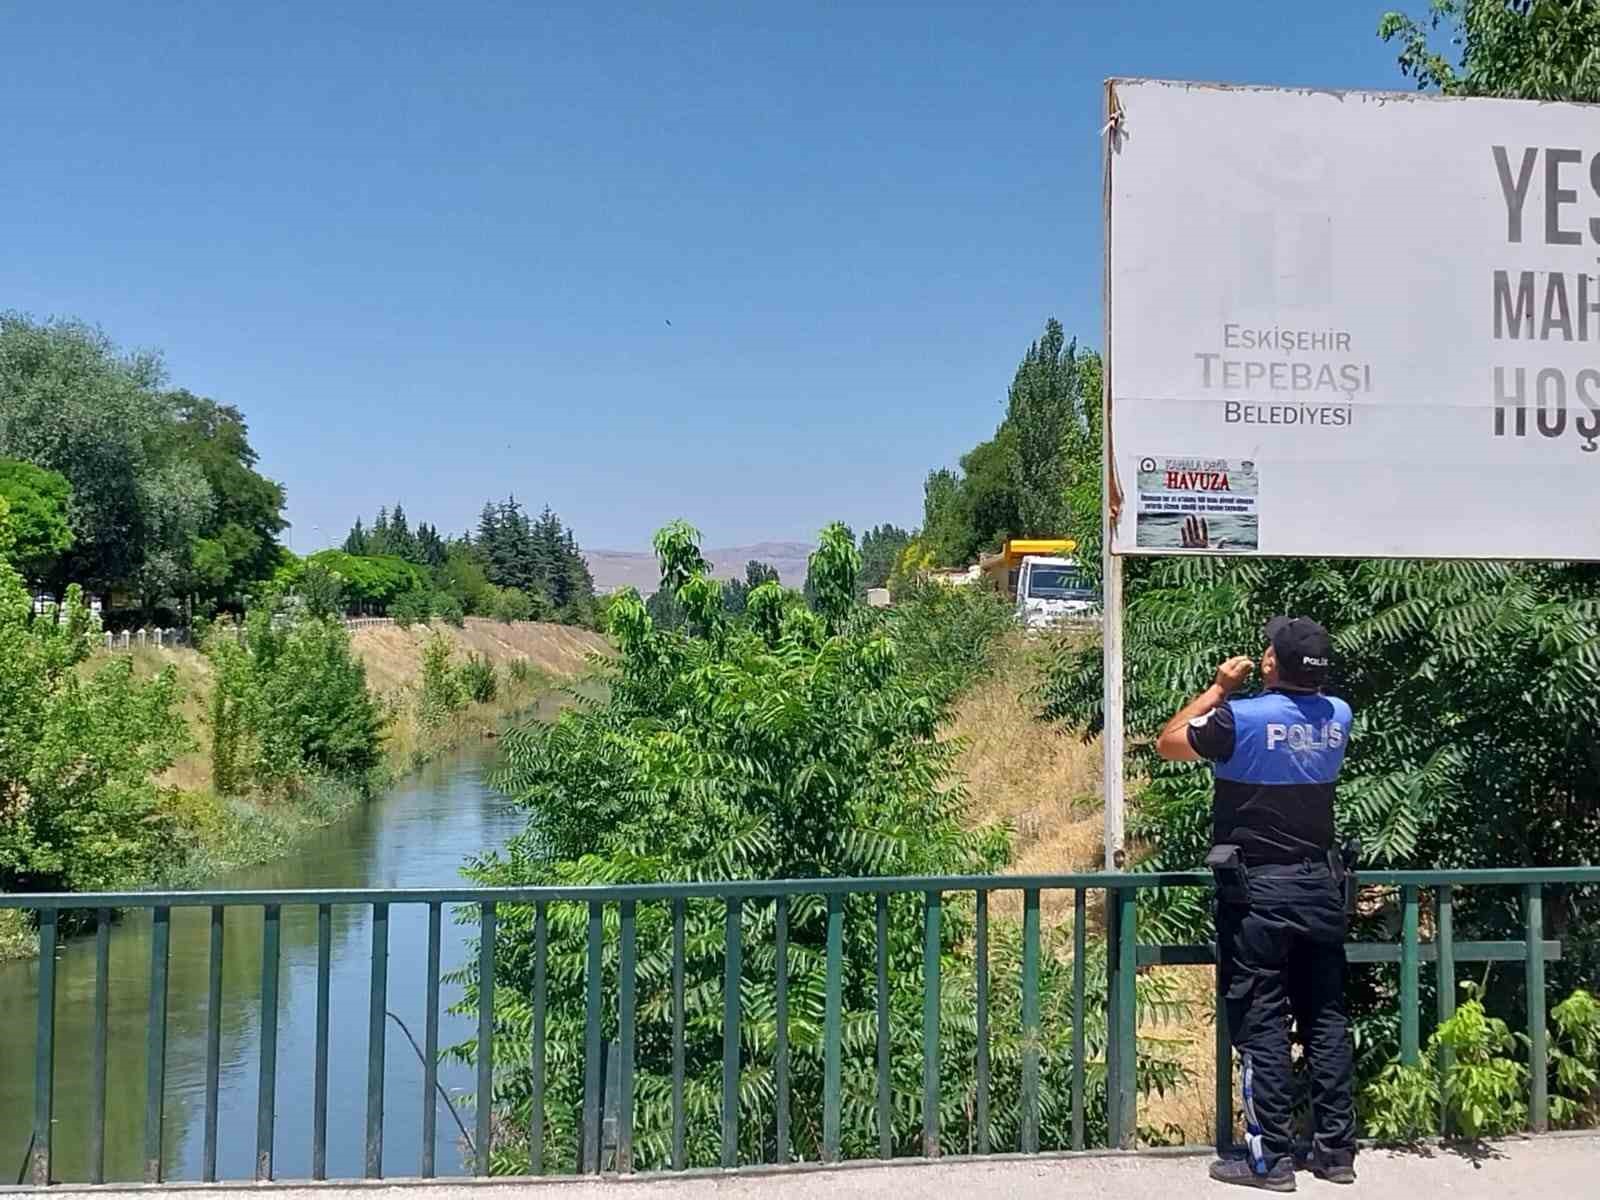 Polis ’Kanala değil havuza’ mesajıyla vatandaşı boğulma riskine karşı bilgilendirdi